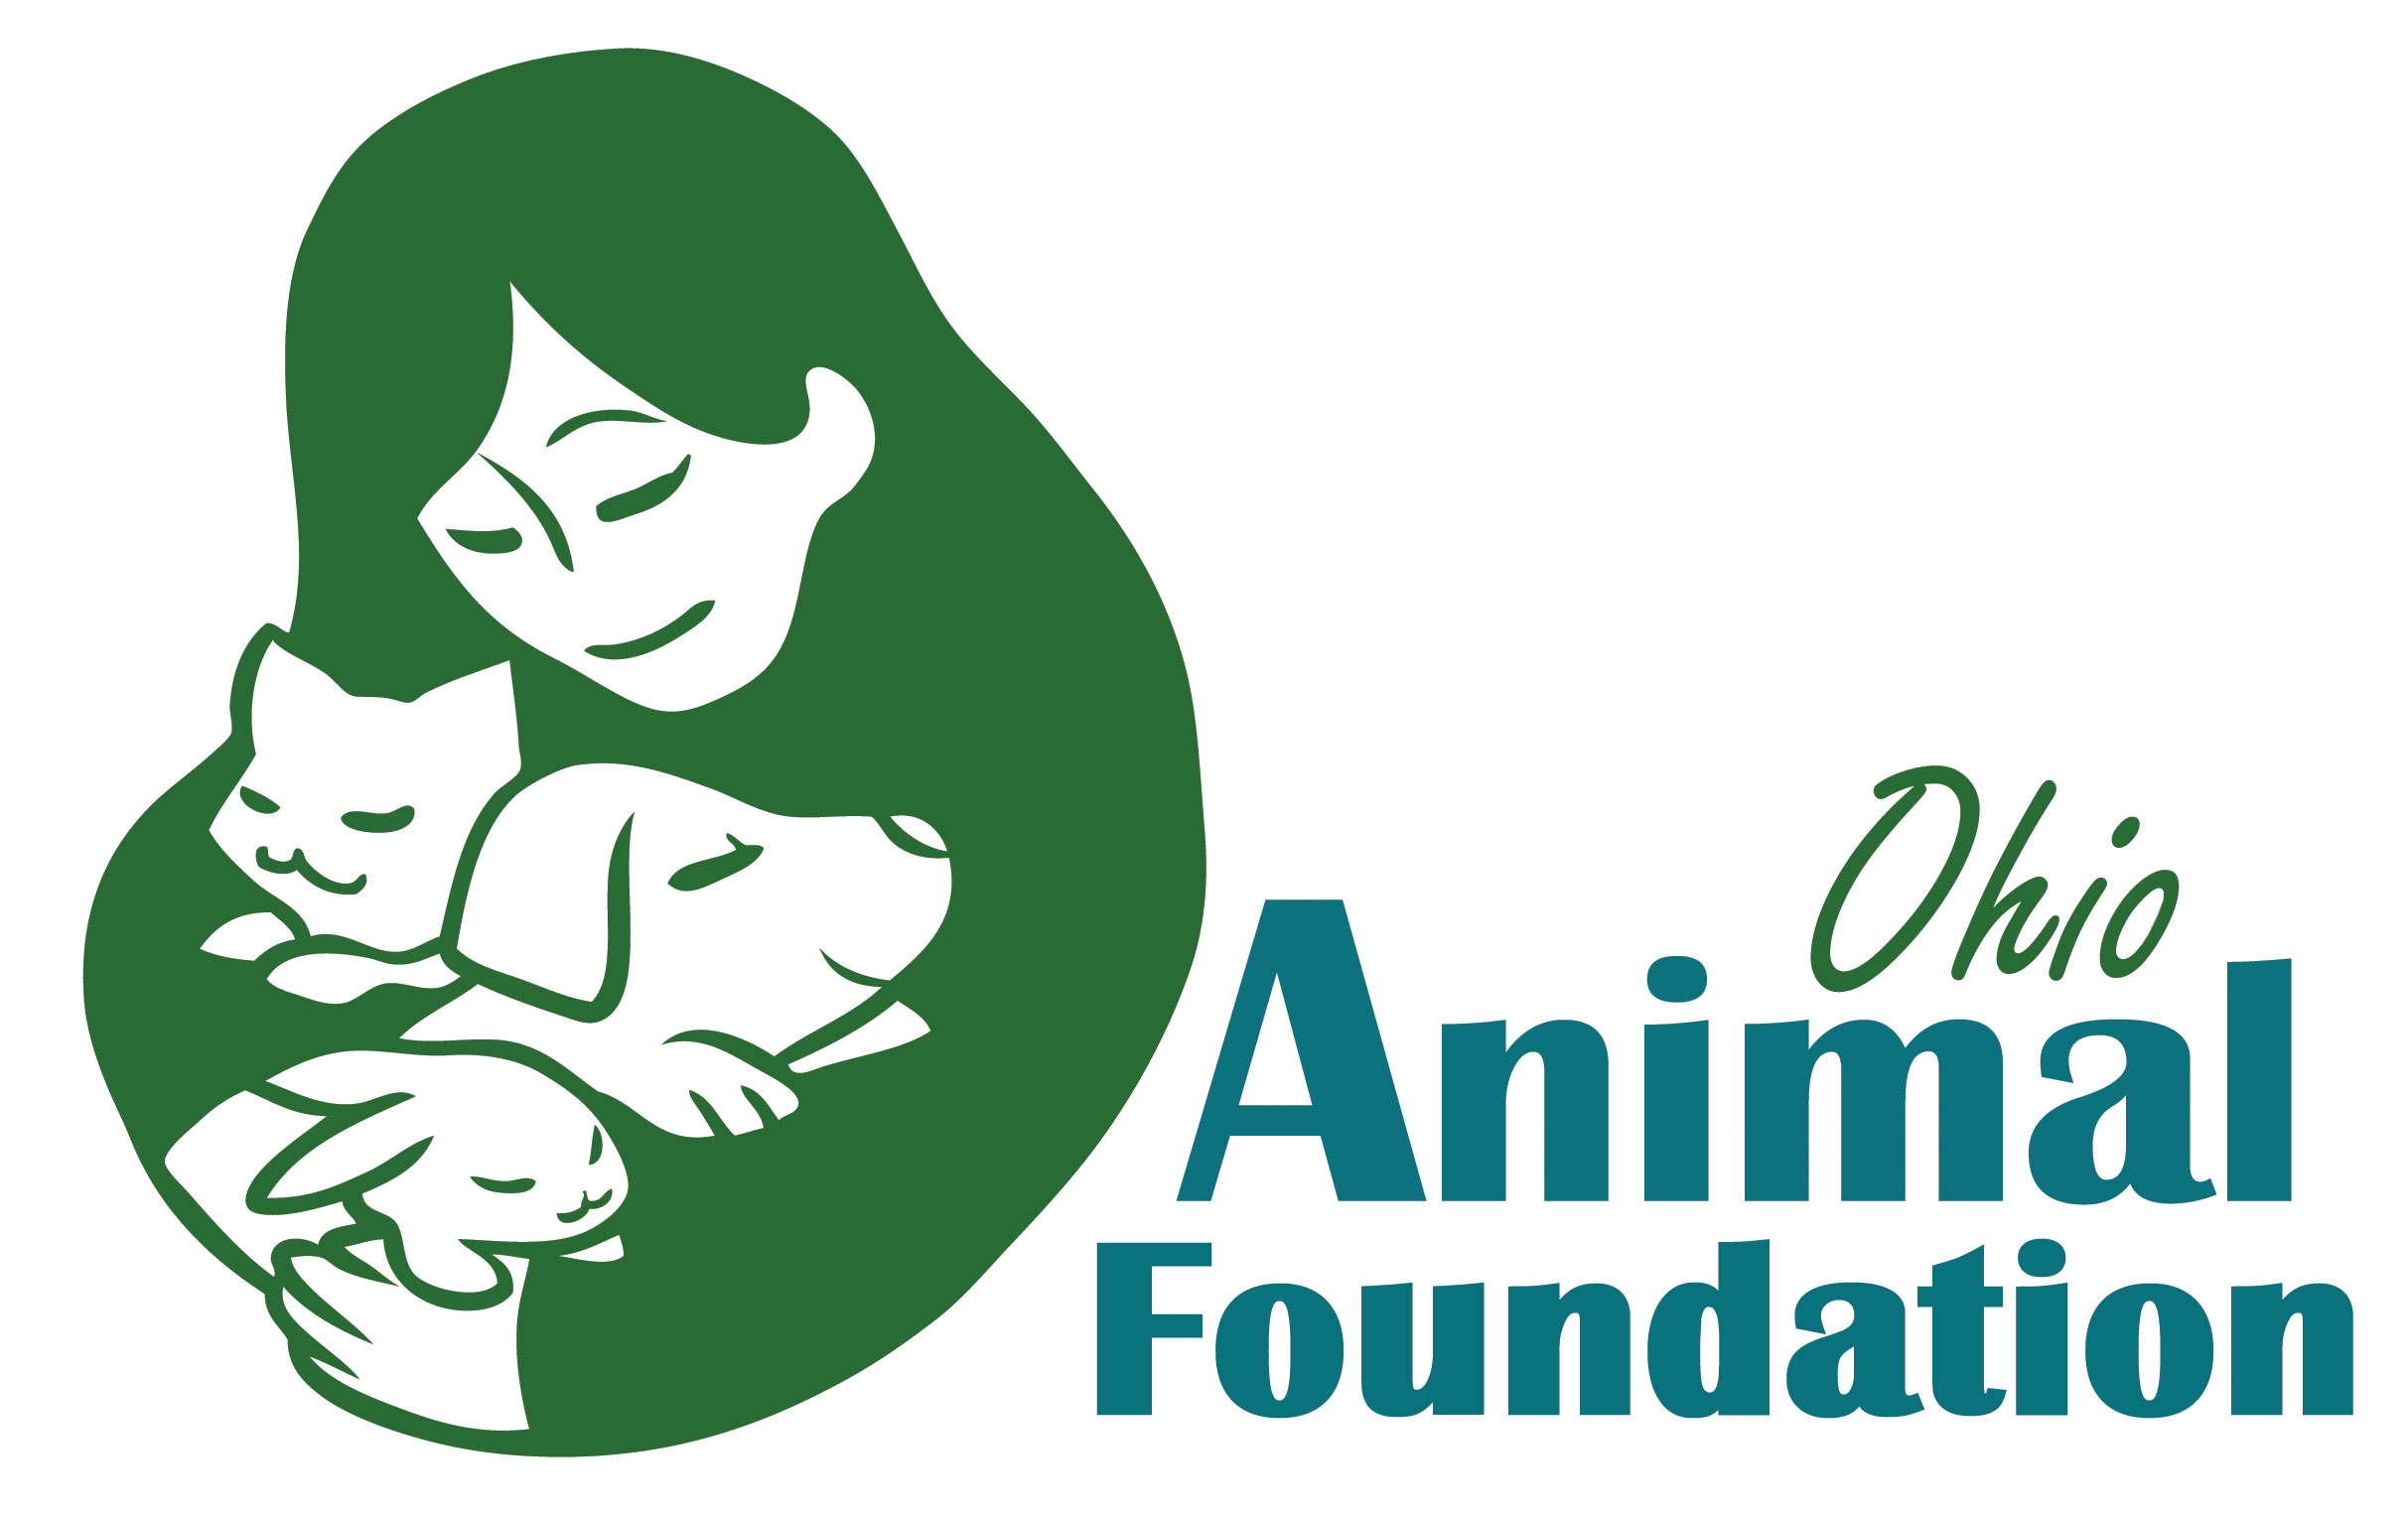 Ohio Animal Foundation